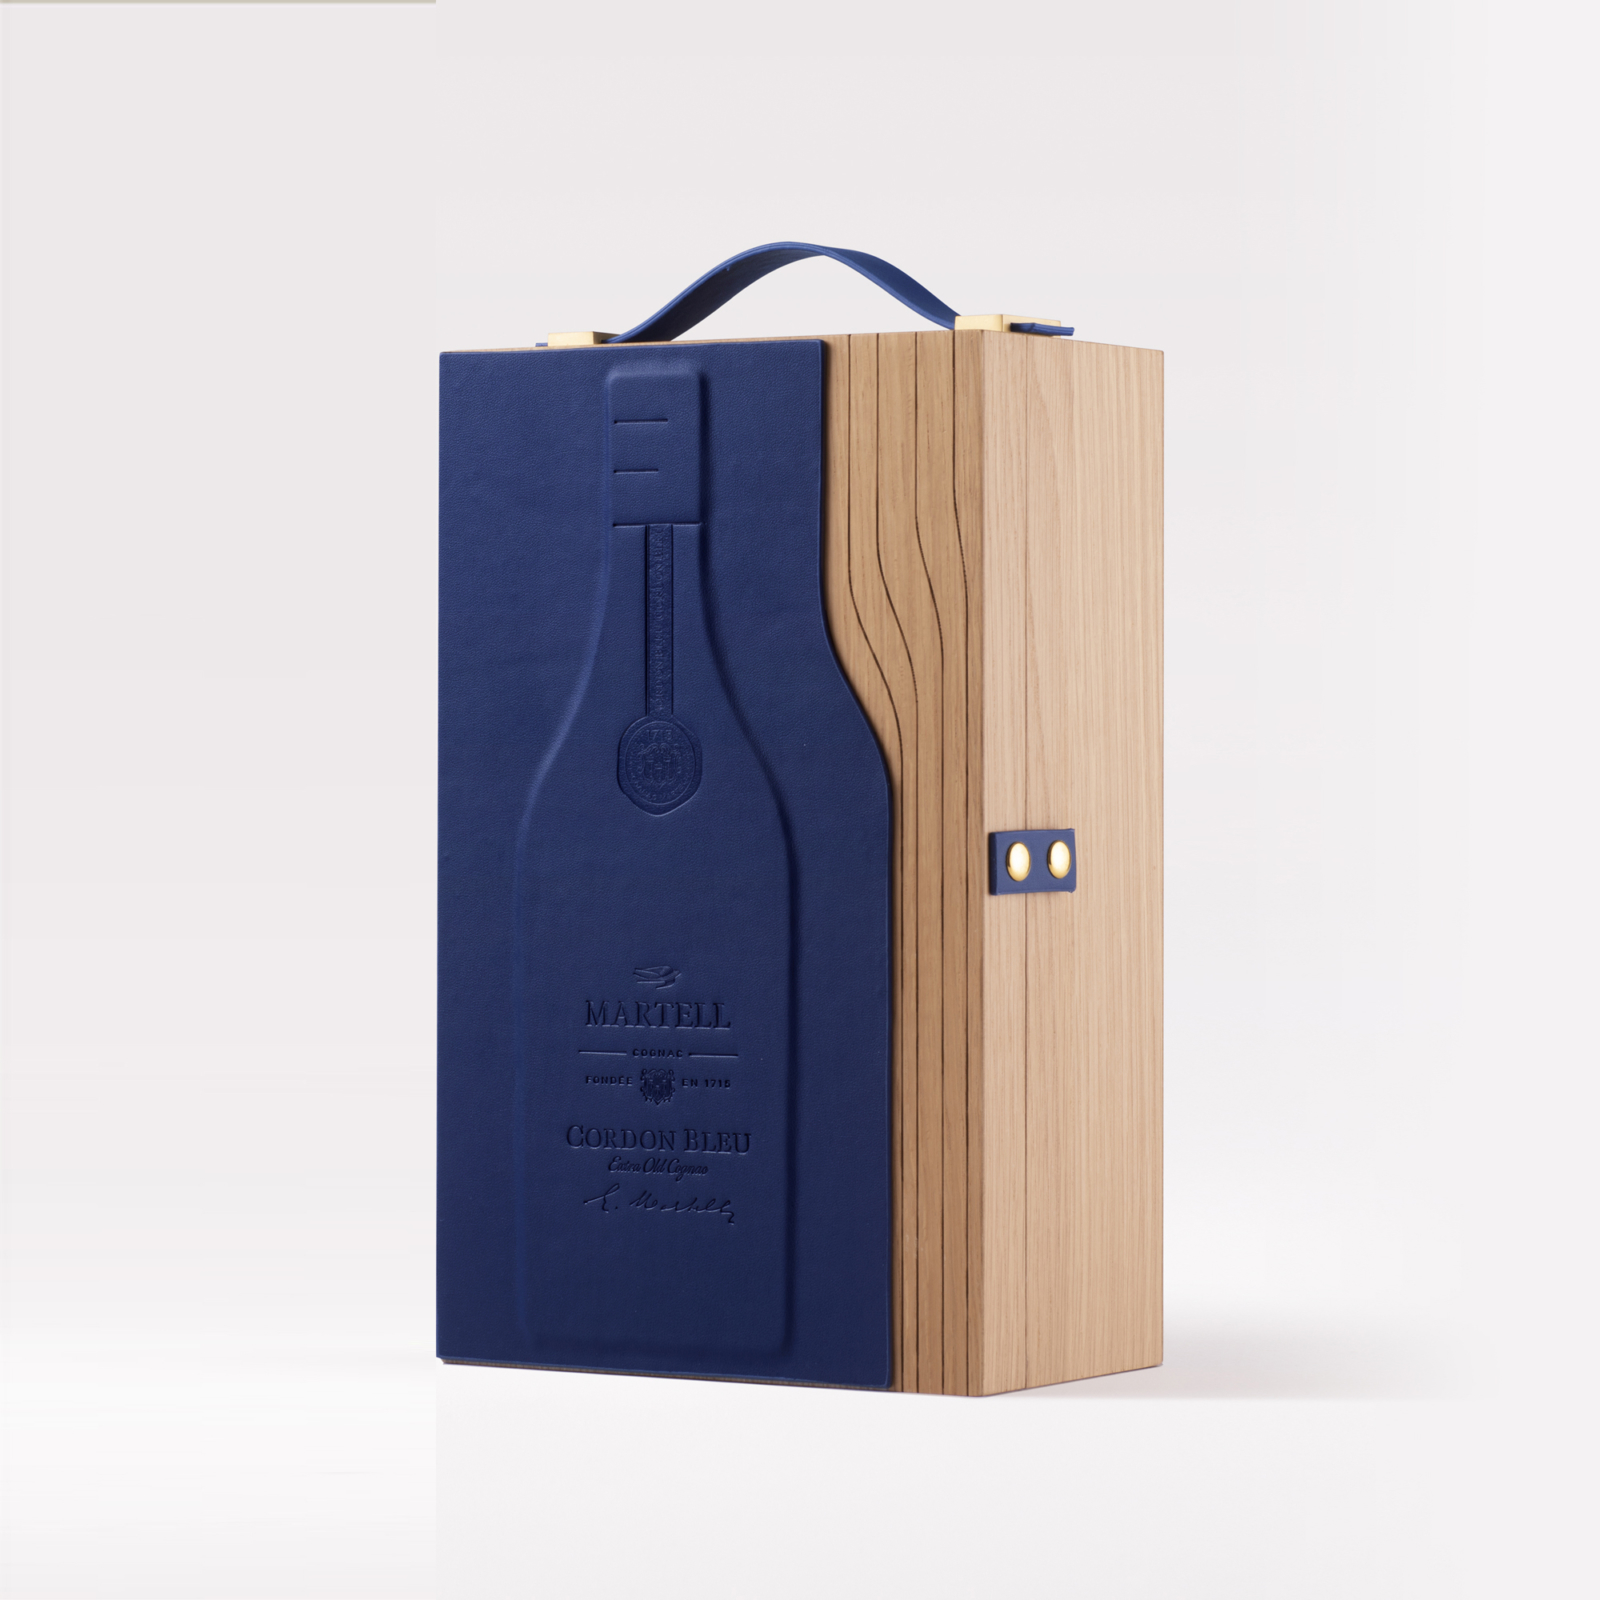 Martell Cordon Bleu Toolkit - Un design pensé par l’agence de design de Paris Partisan du Sens.